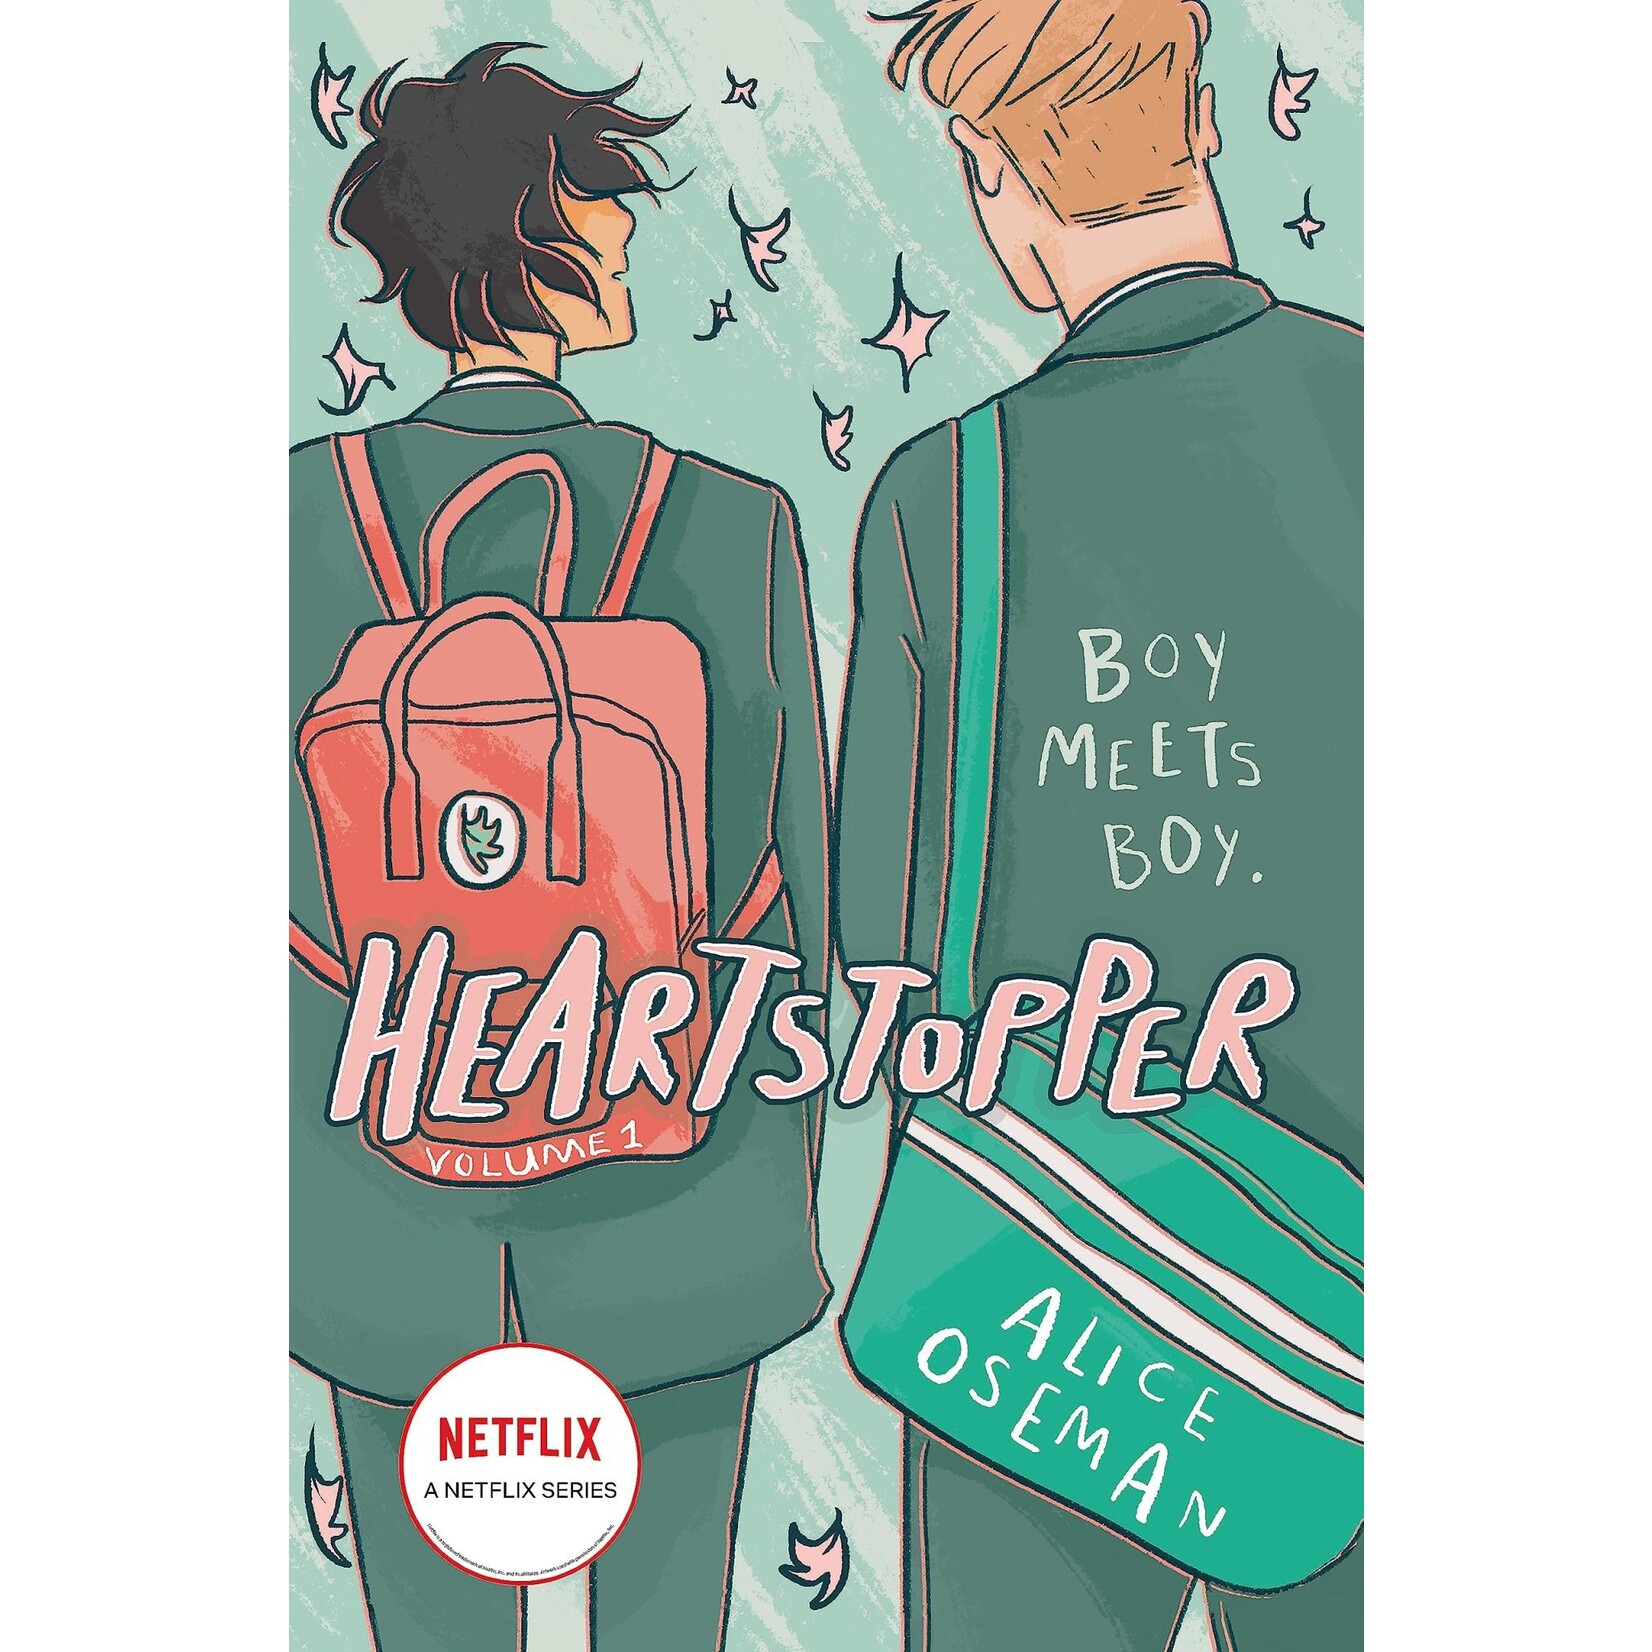 Heartstopper: Volume One (Graphic Novel)